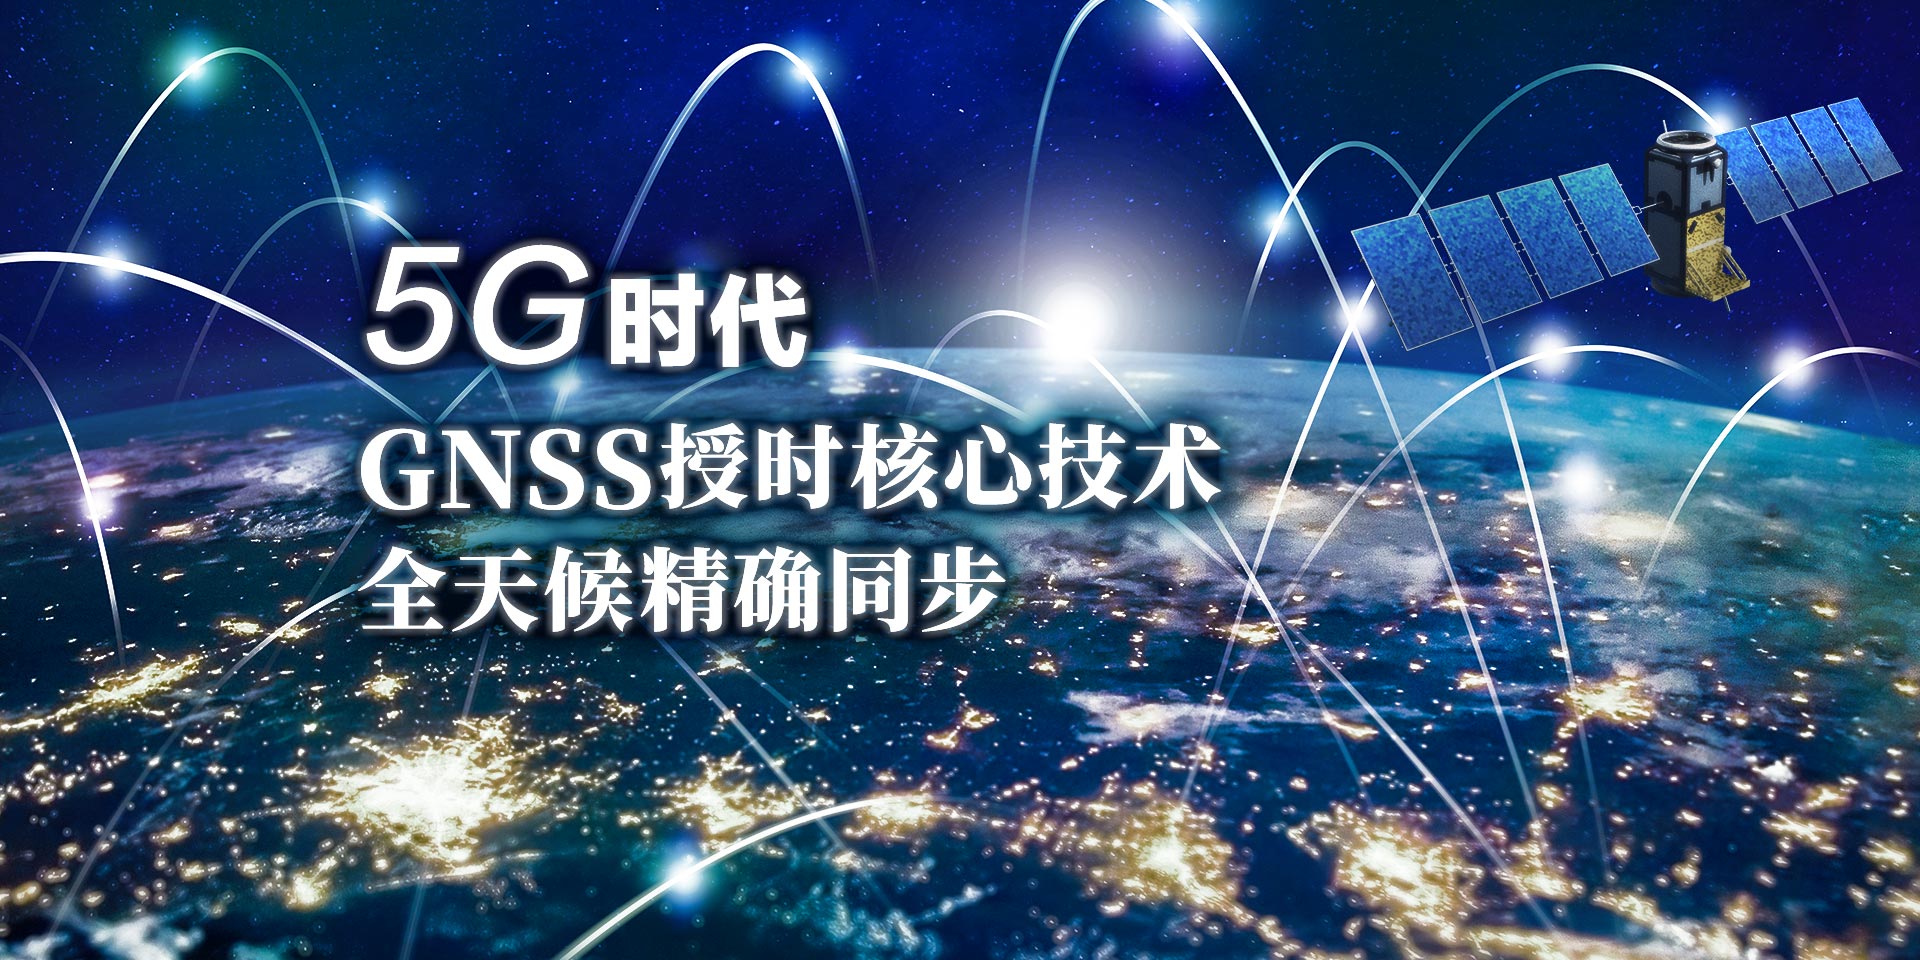 5G时代GNSS授时核心技术全天候精确同步